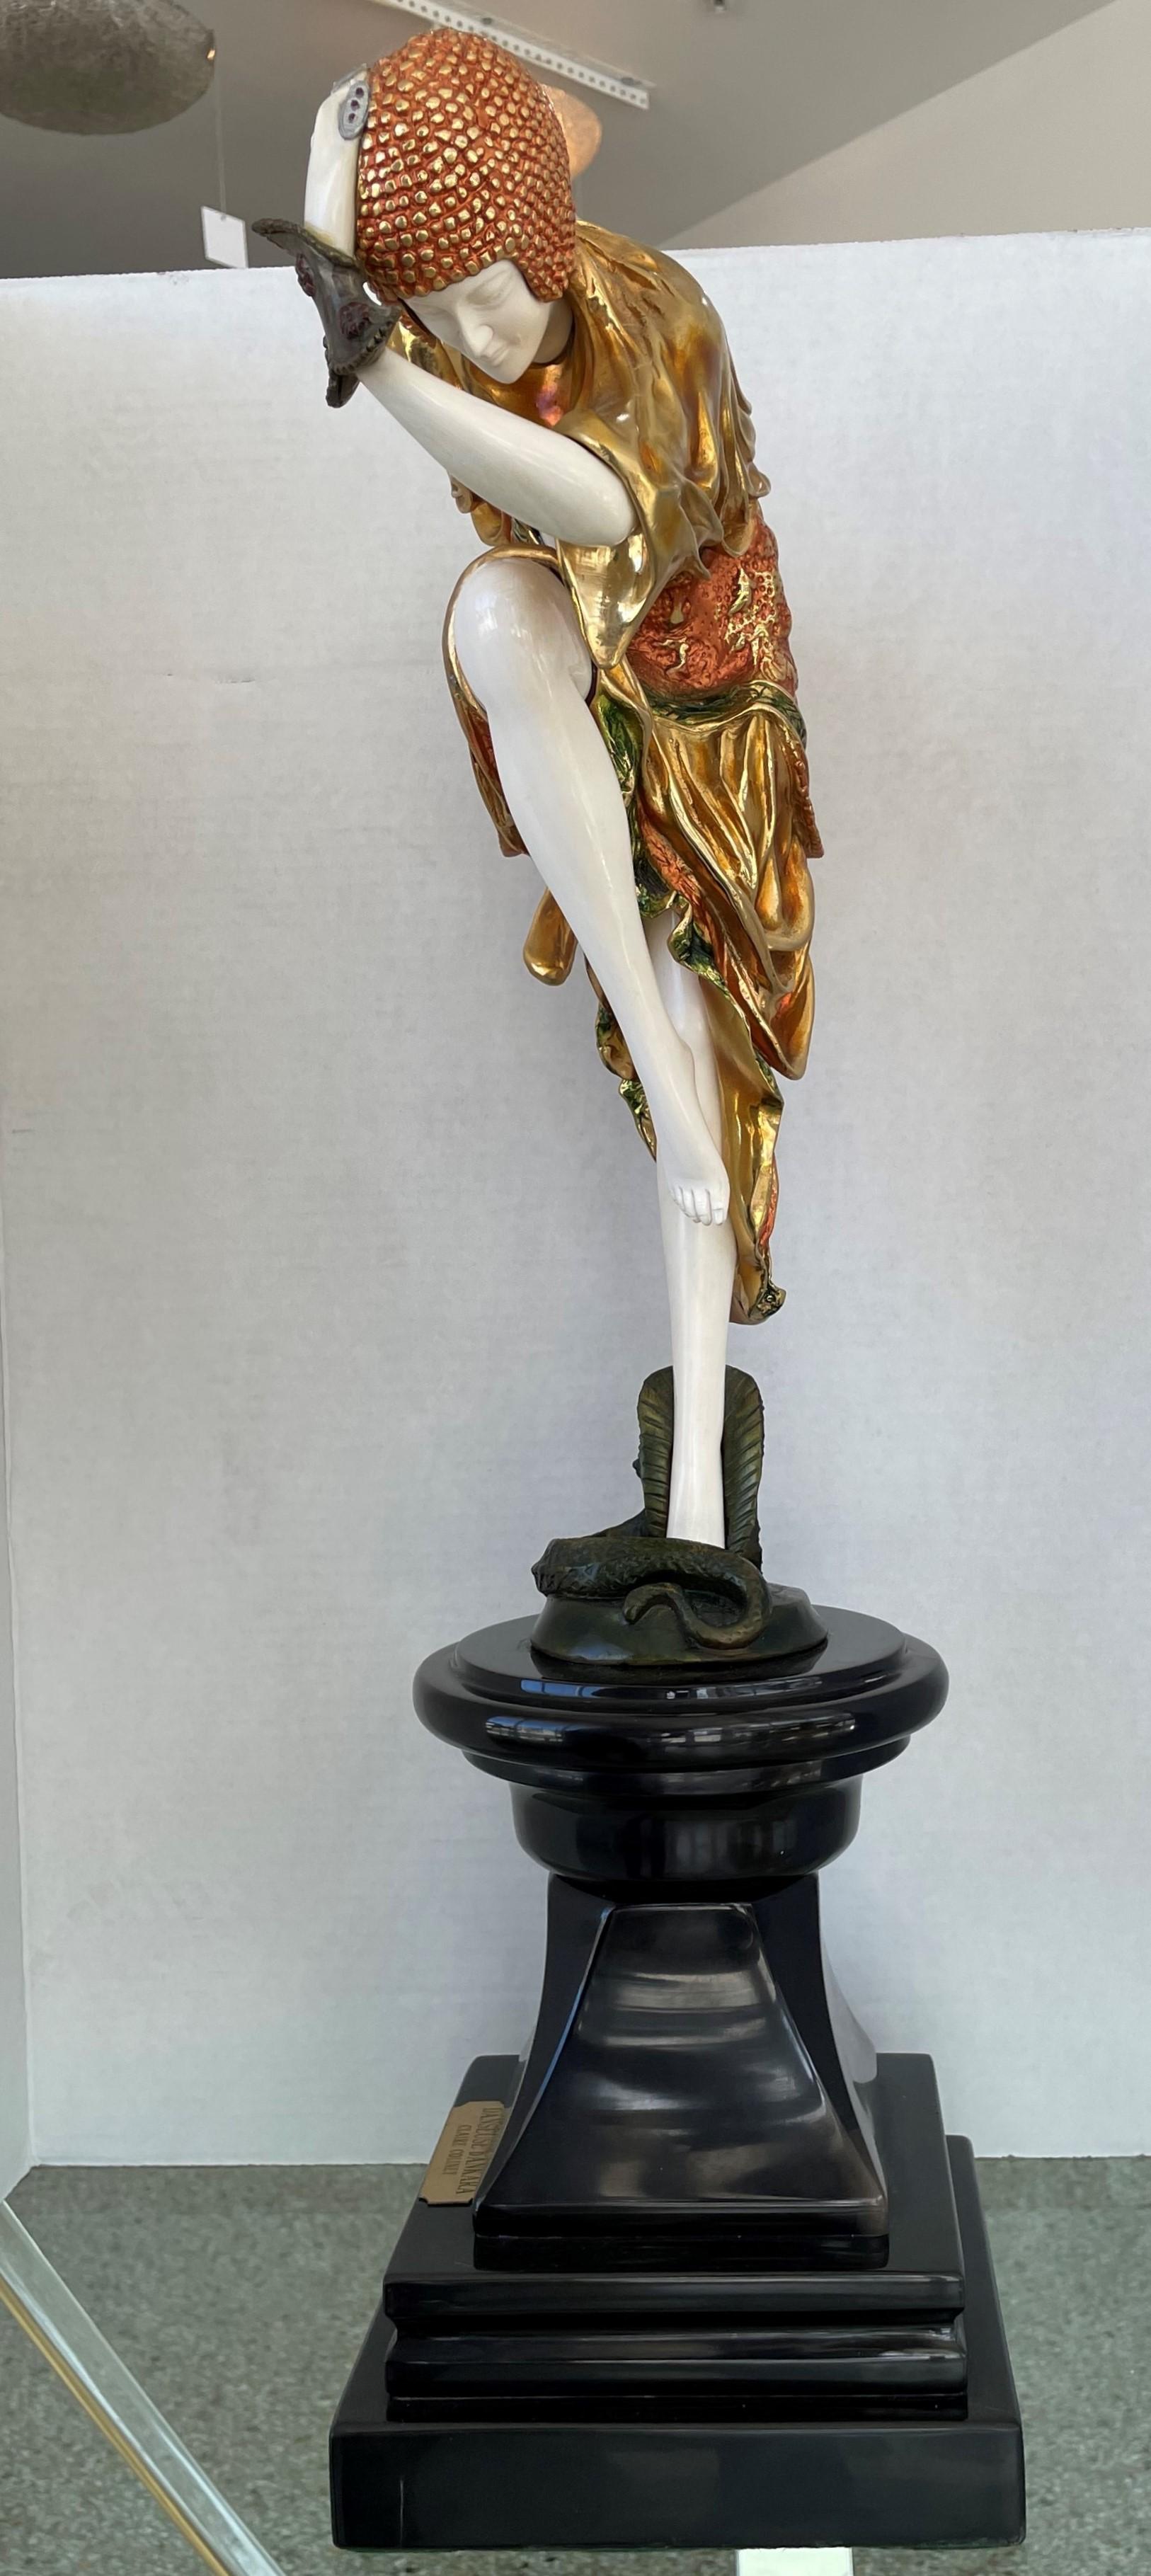 Cette sculpture élégante et chic de style Art déco s'inspire de la sculpture de la danseuse serpent du sculpteur d'origine roumaine Demtre Chiparus, qui a été créée en 1925.

La pièce est finie dans une coloration polychrome et patinée.
